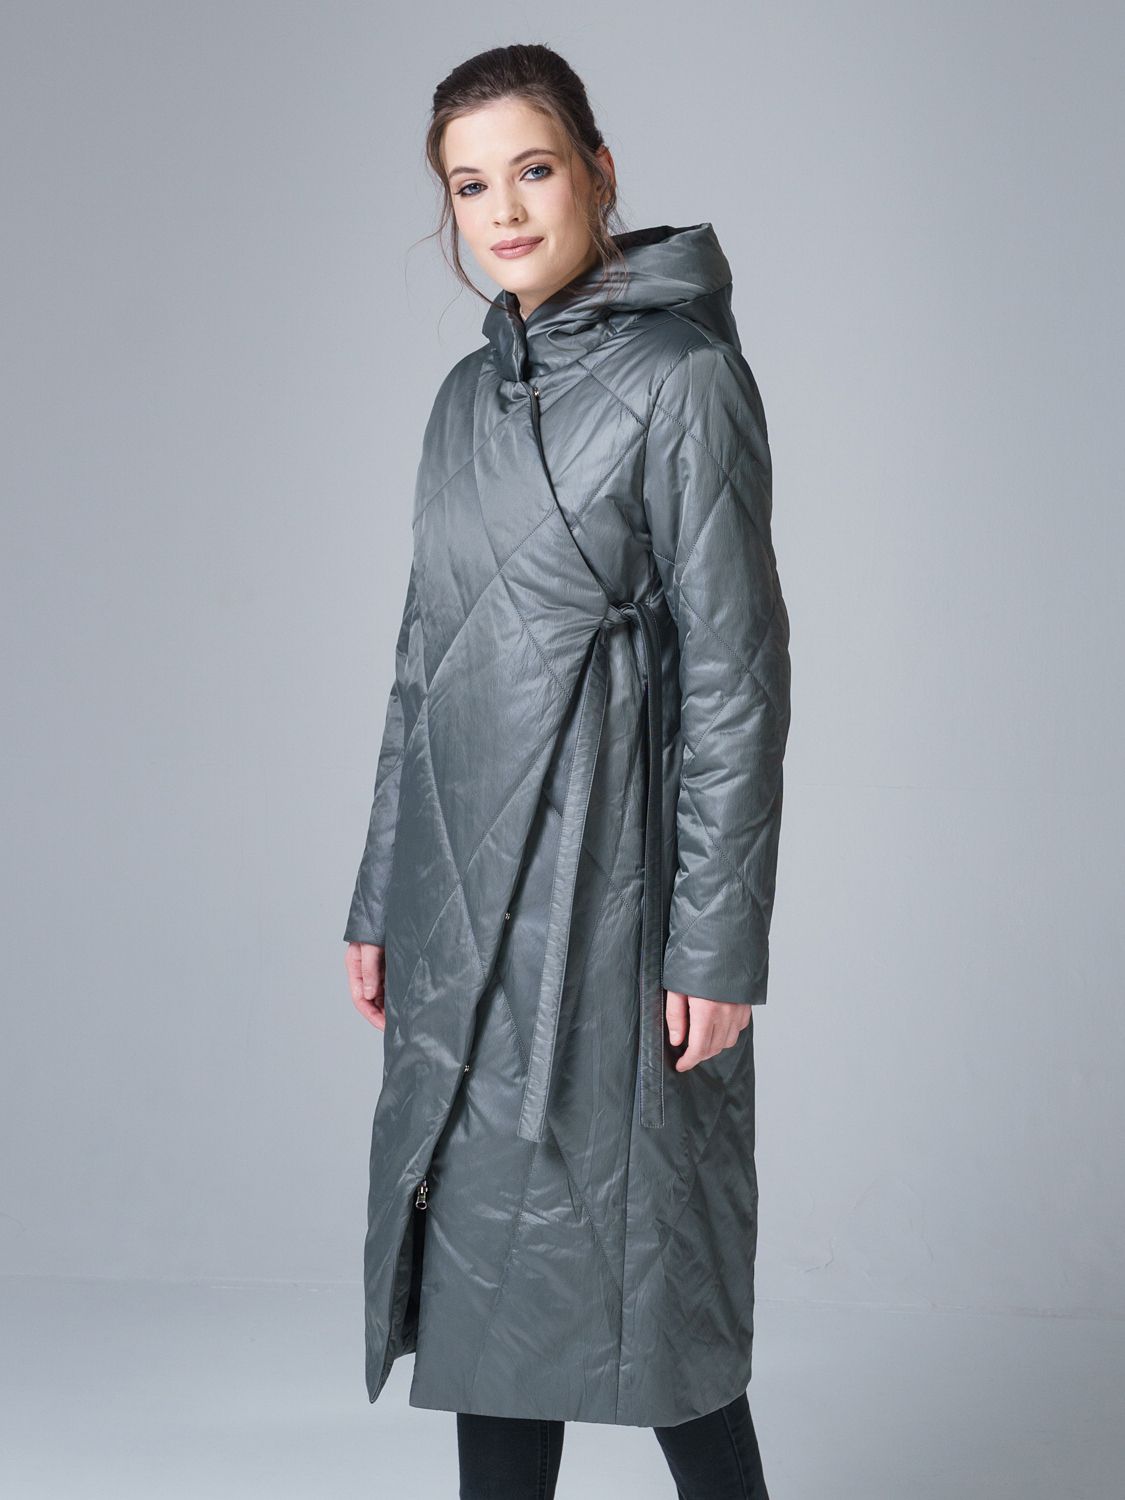 Пальто женское OHARA MC-21711 серое 42 RU